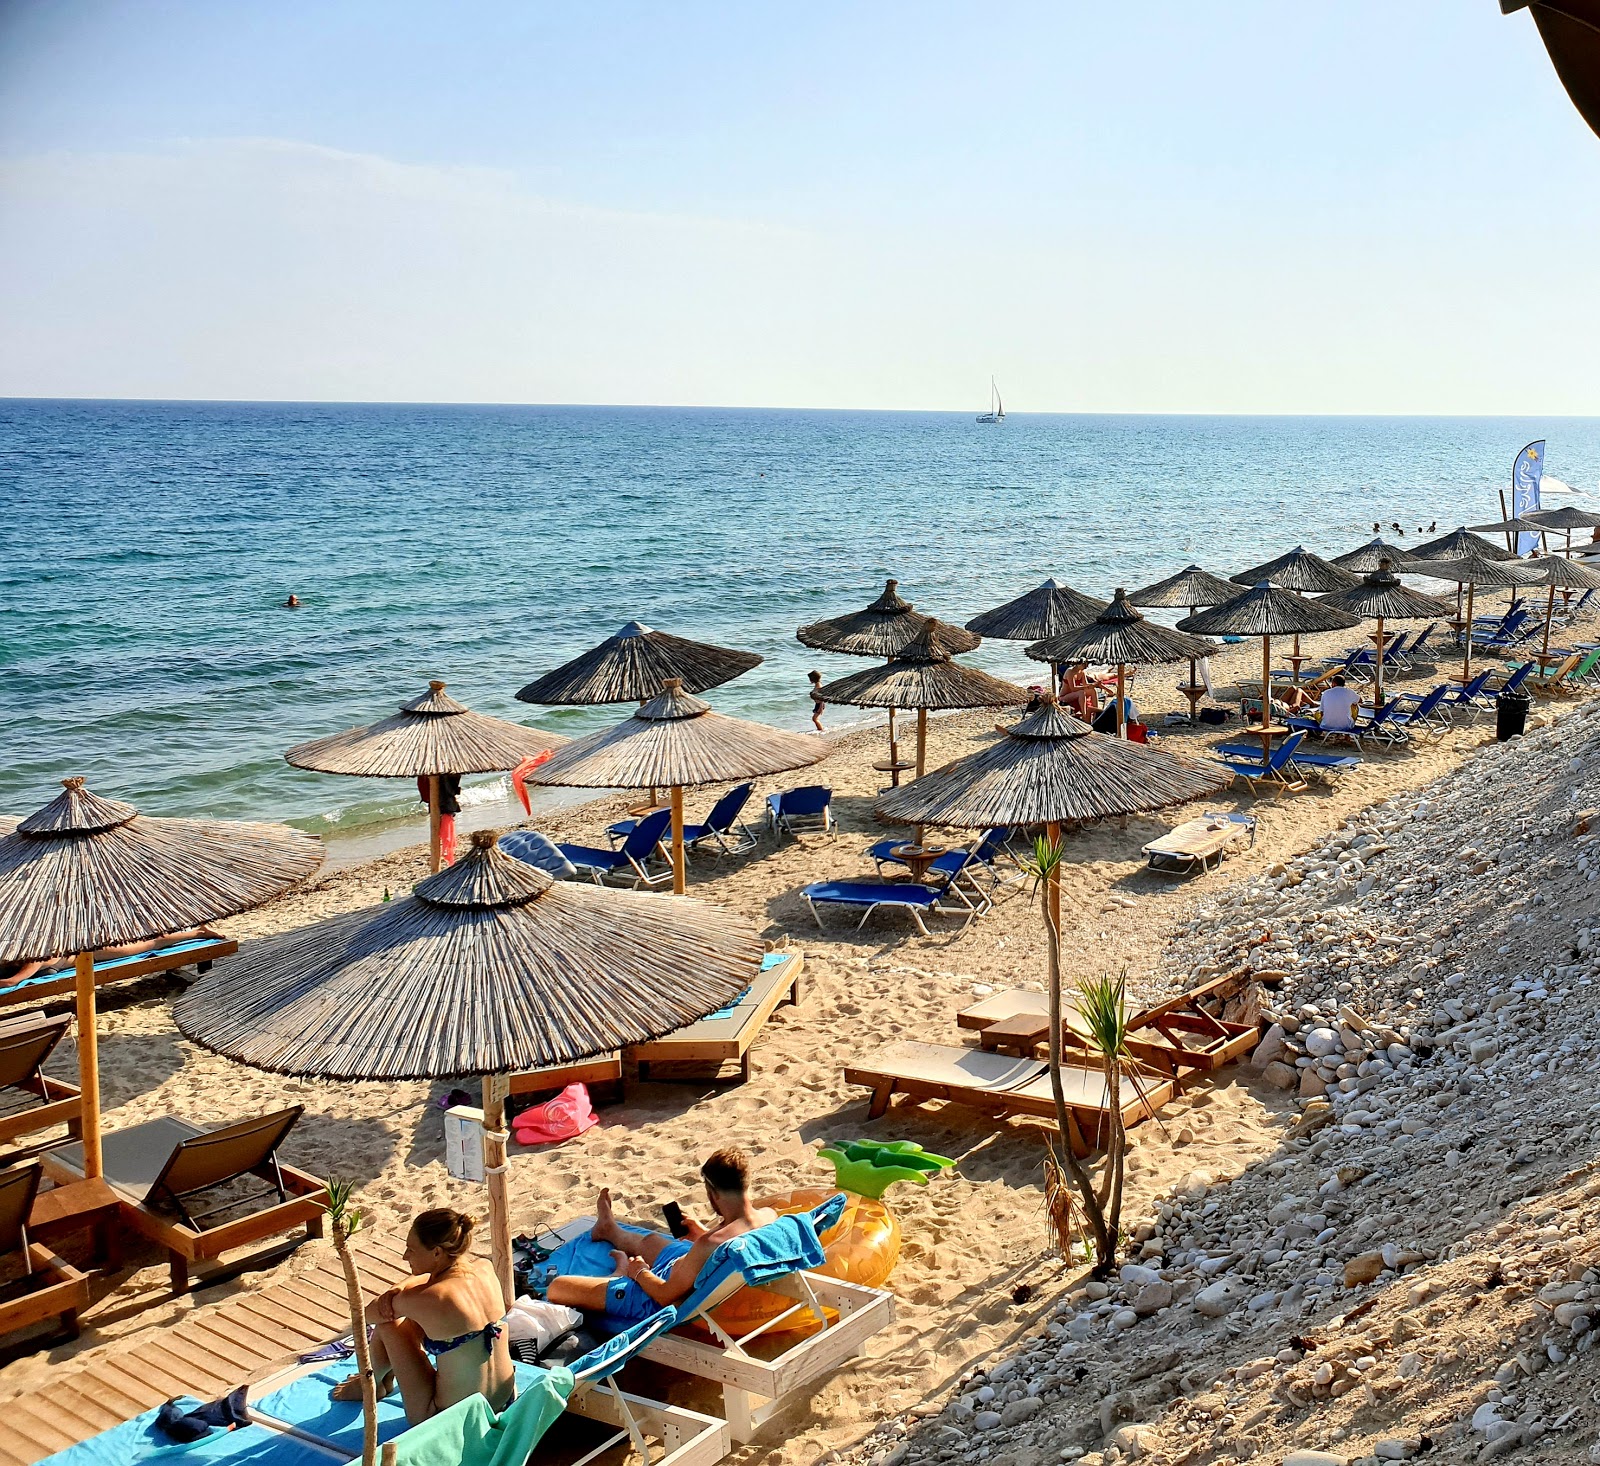 Φωτογραφία του Aegean beach με επίπεδο καθαριότητας πολύ καθαρό